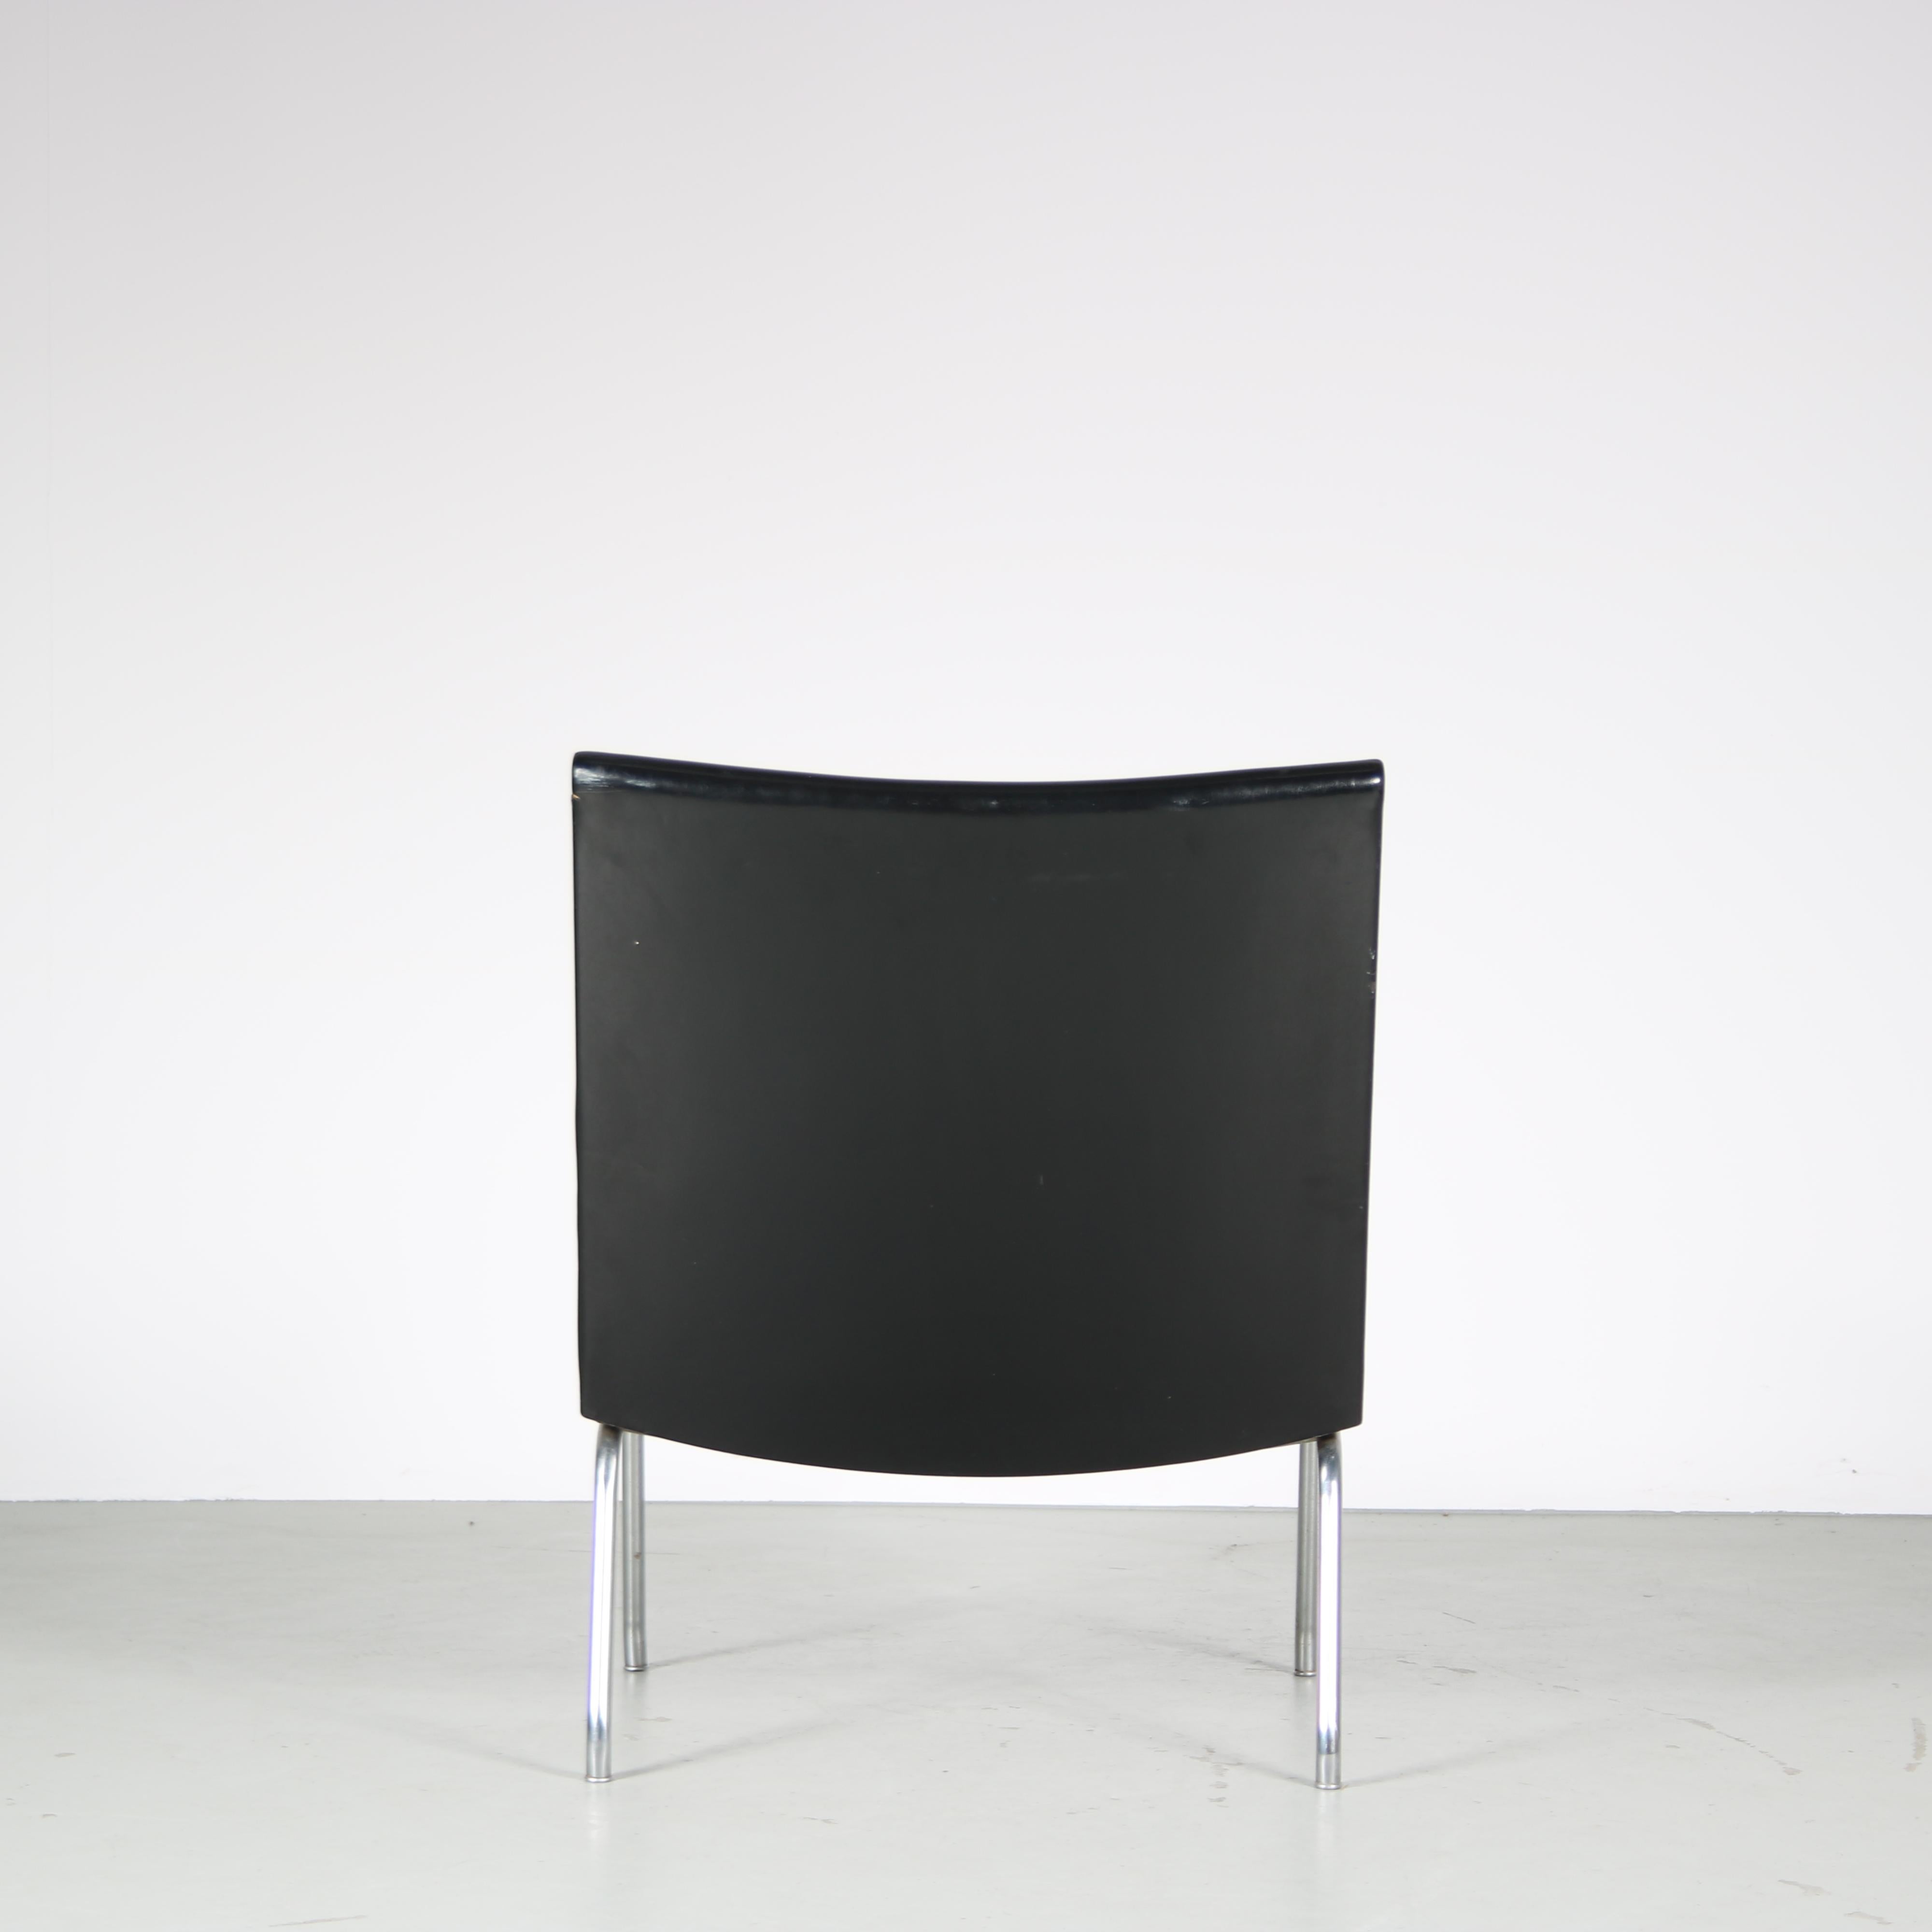 Hans J. Wegner “Airport” Chairs for Ap Stolen, Denmark For Sale 4